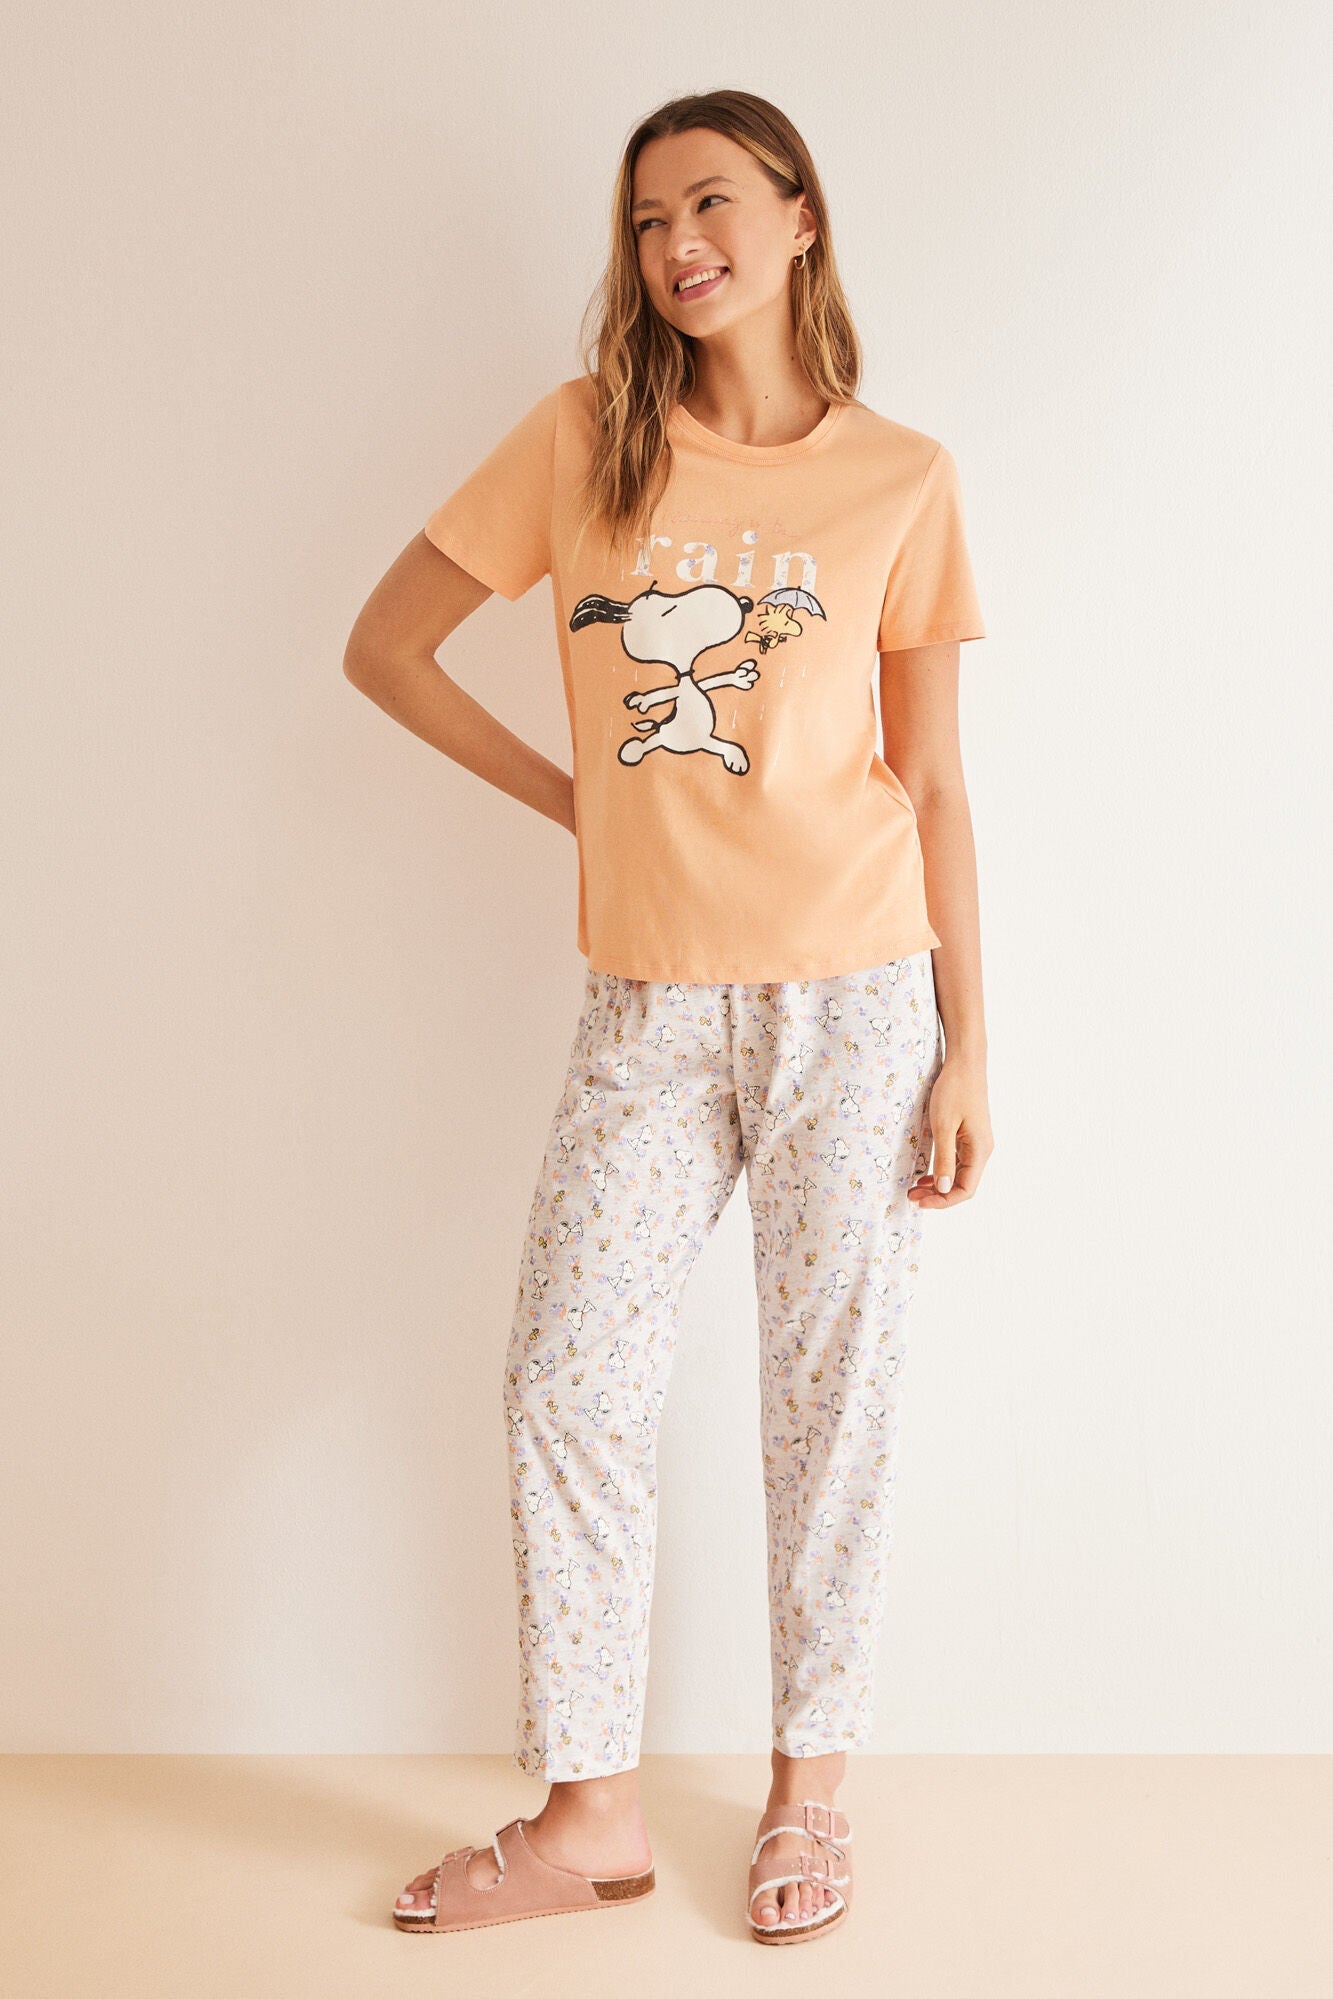 100% orange cotton Snoopy pajamas